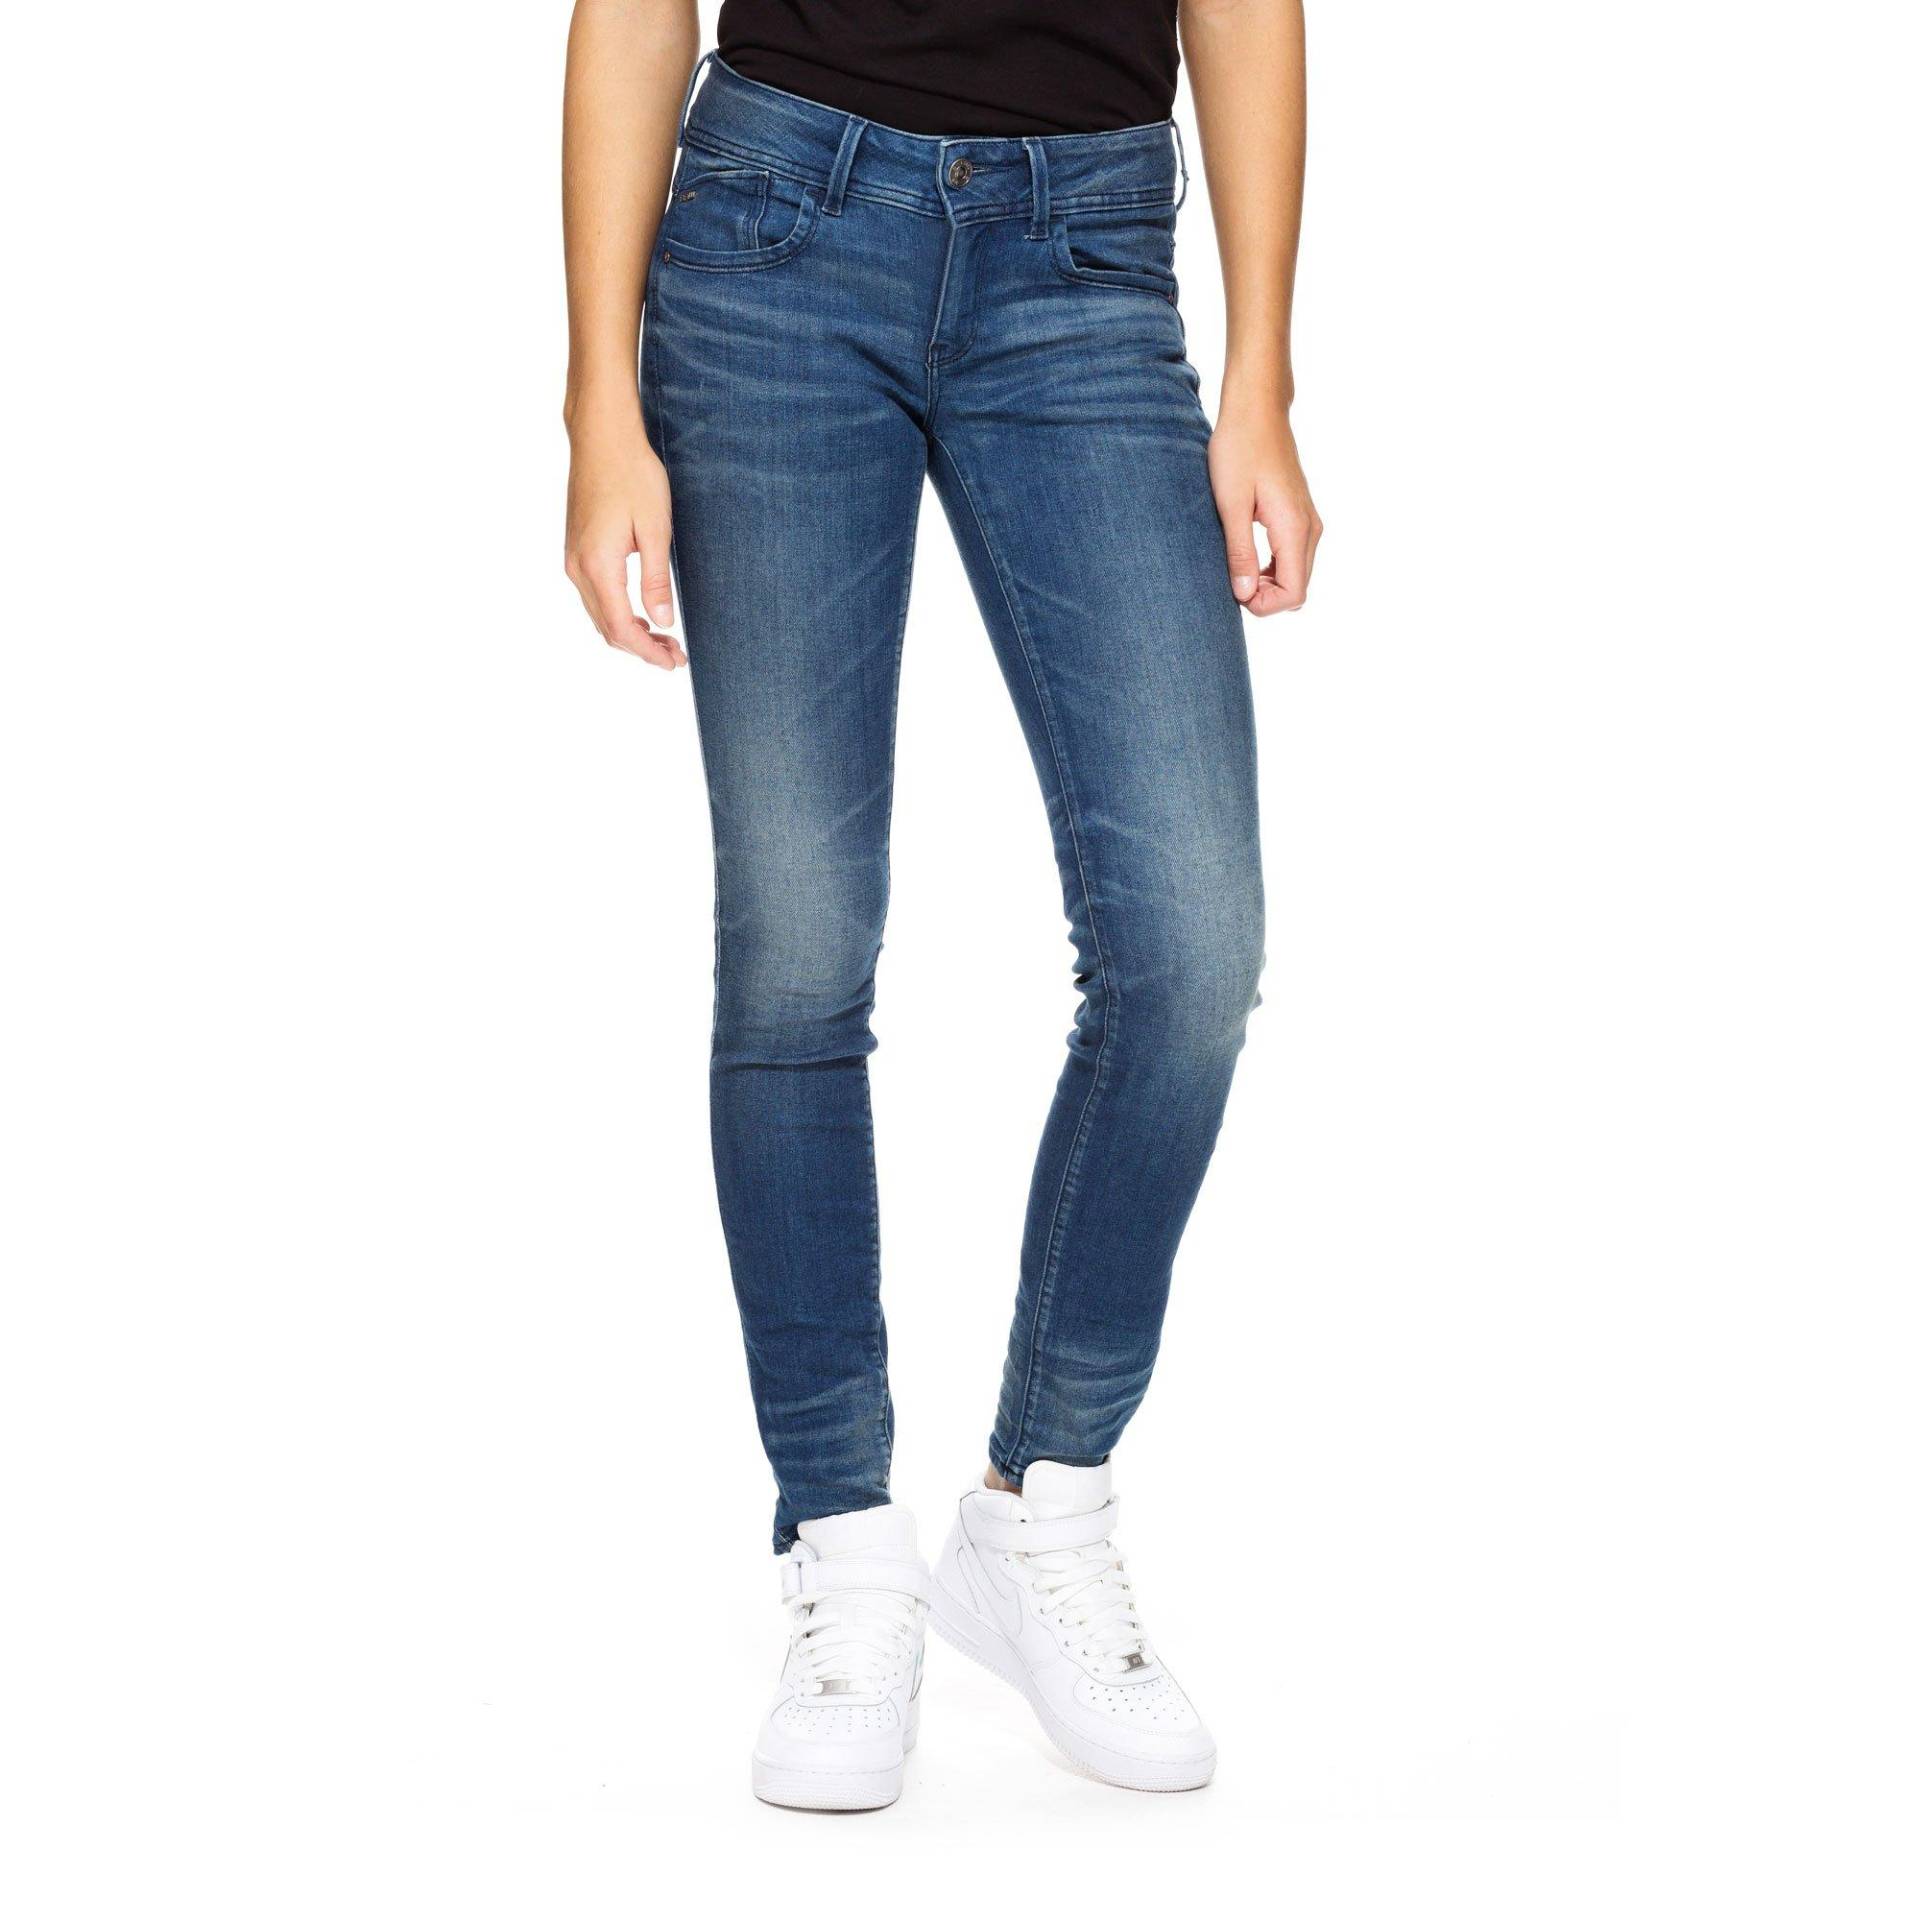 Jeans, Skinny Fit Damen Blau Denim L32/W29 von G-STAR